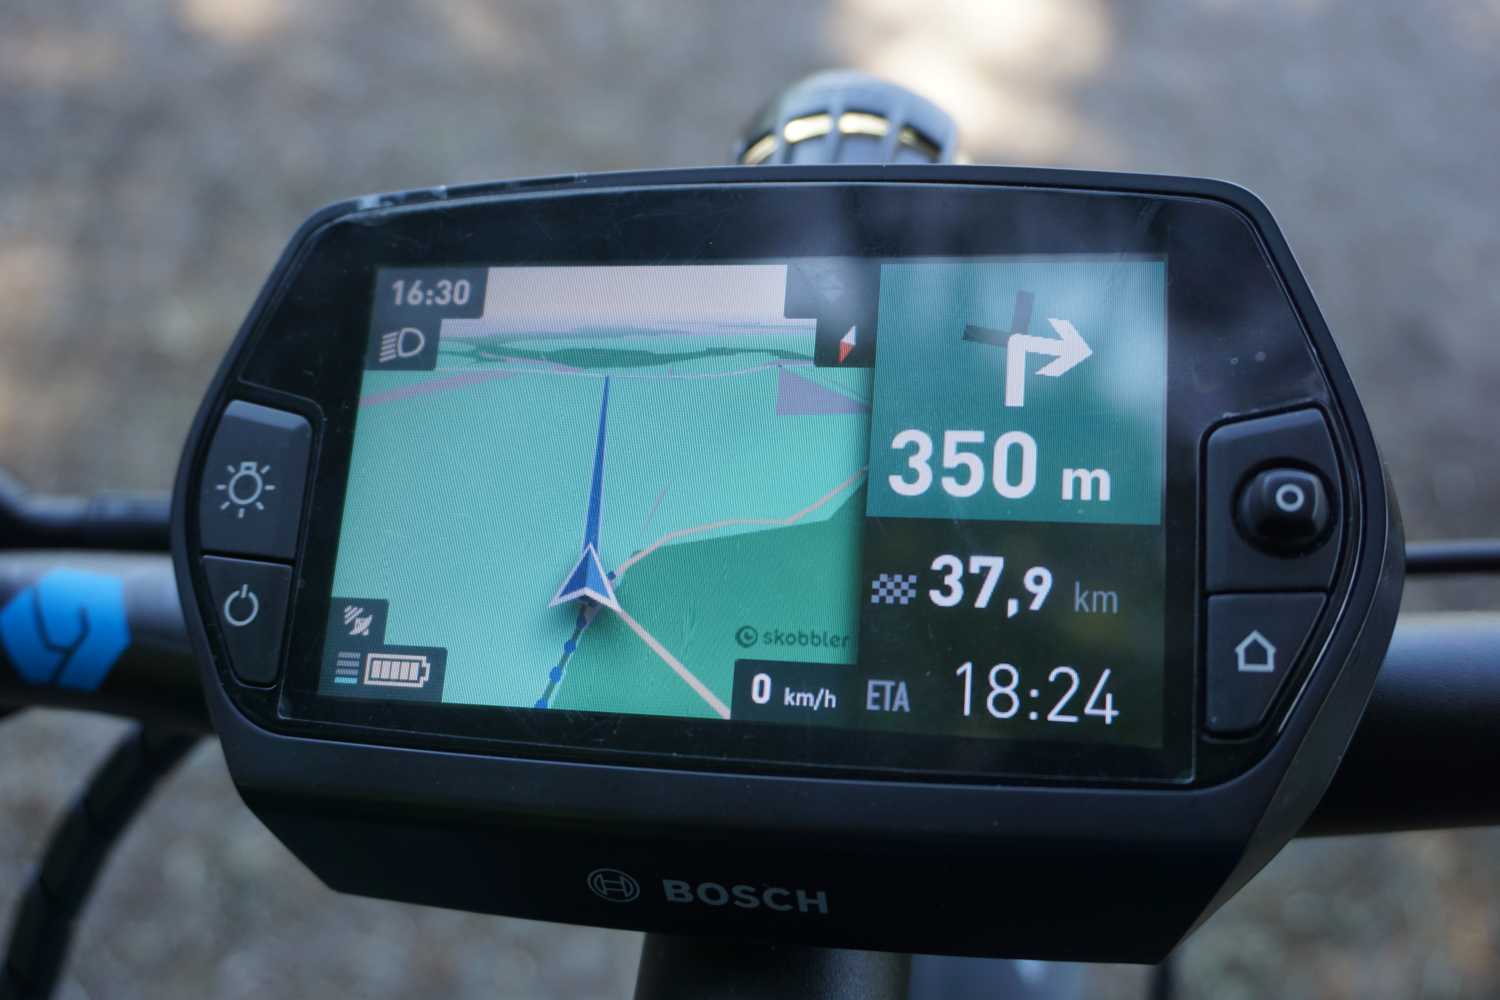 ▷ Bosch Nyon im Test » eBike Navigation einfach und komplett